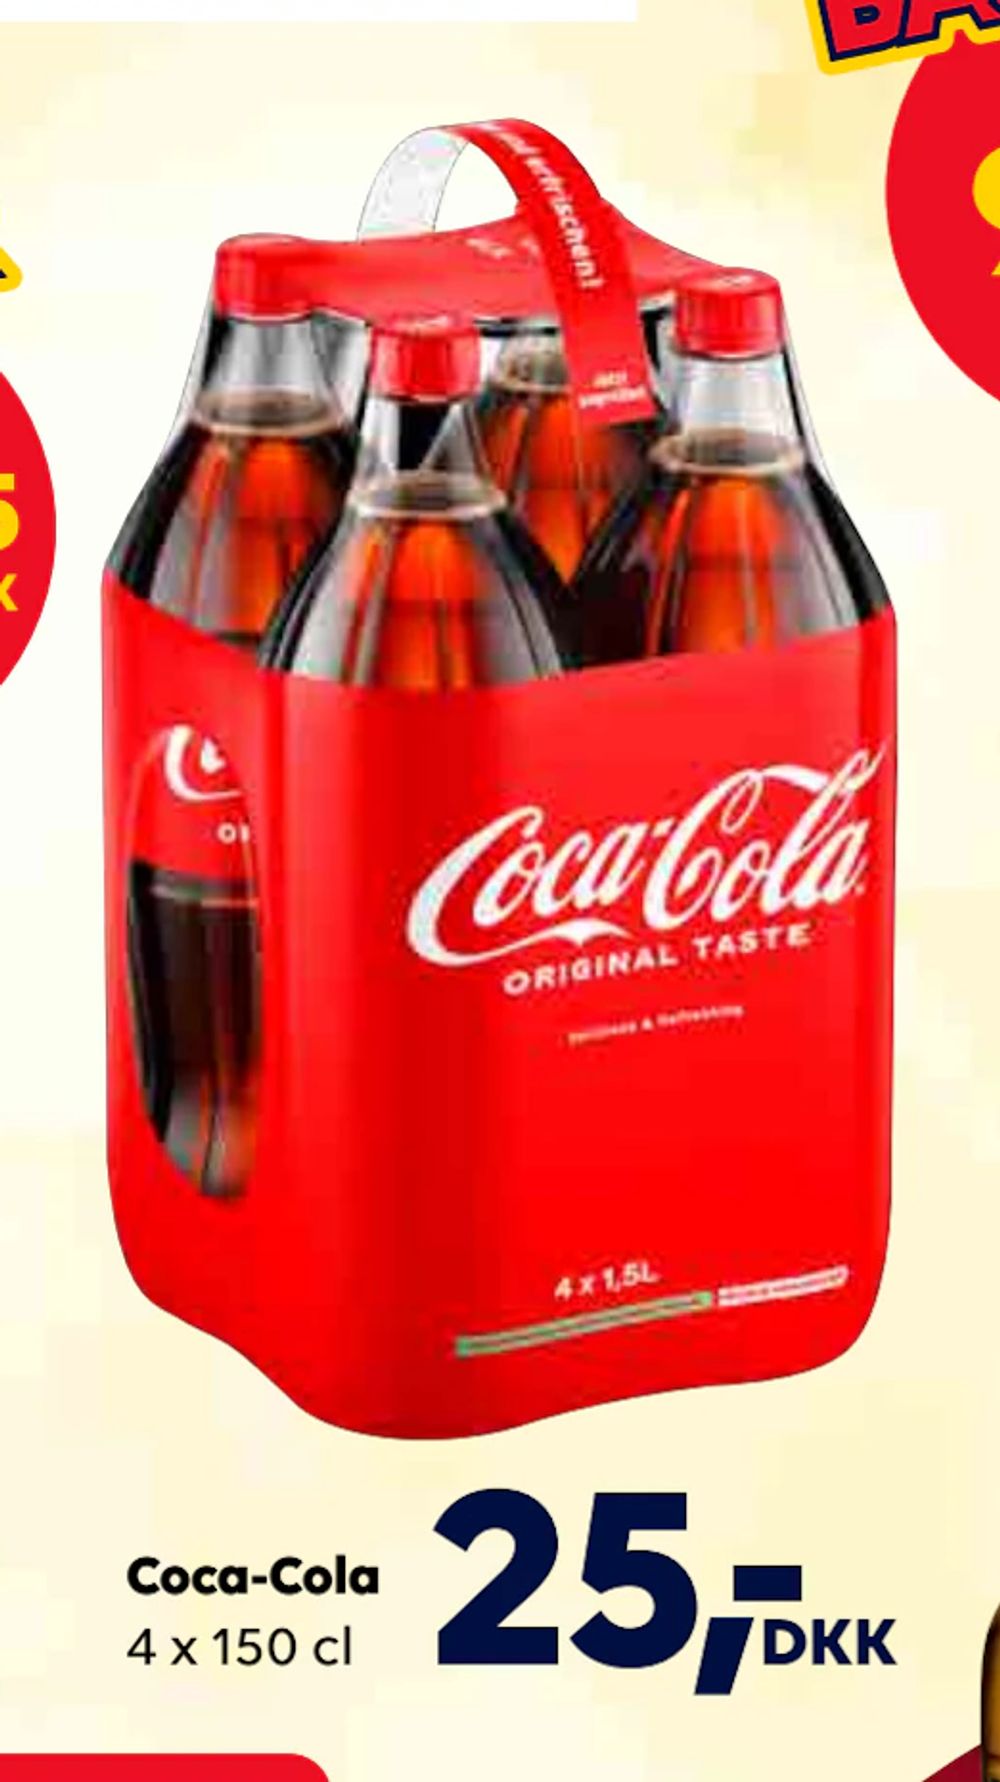 Tilbud på Coca-Cola fra BorderShop til 25 kr.